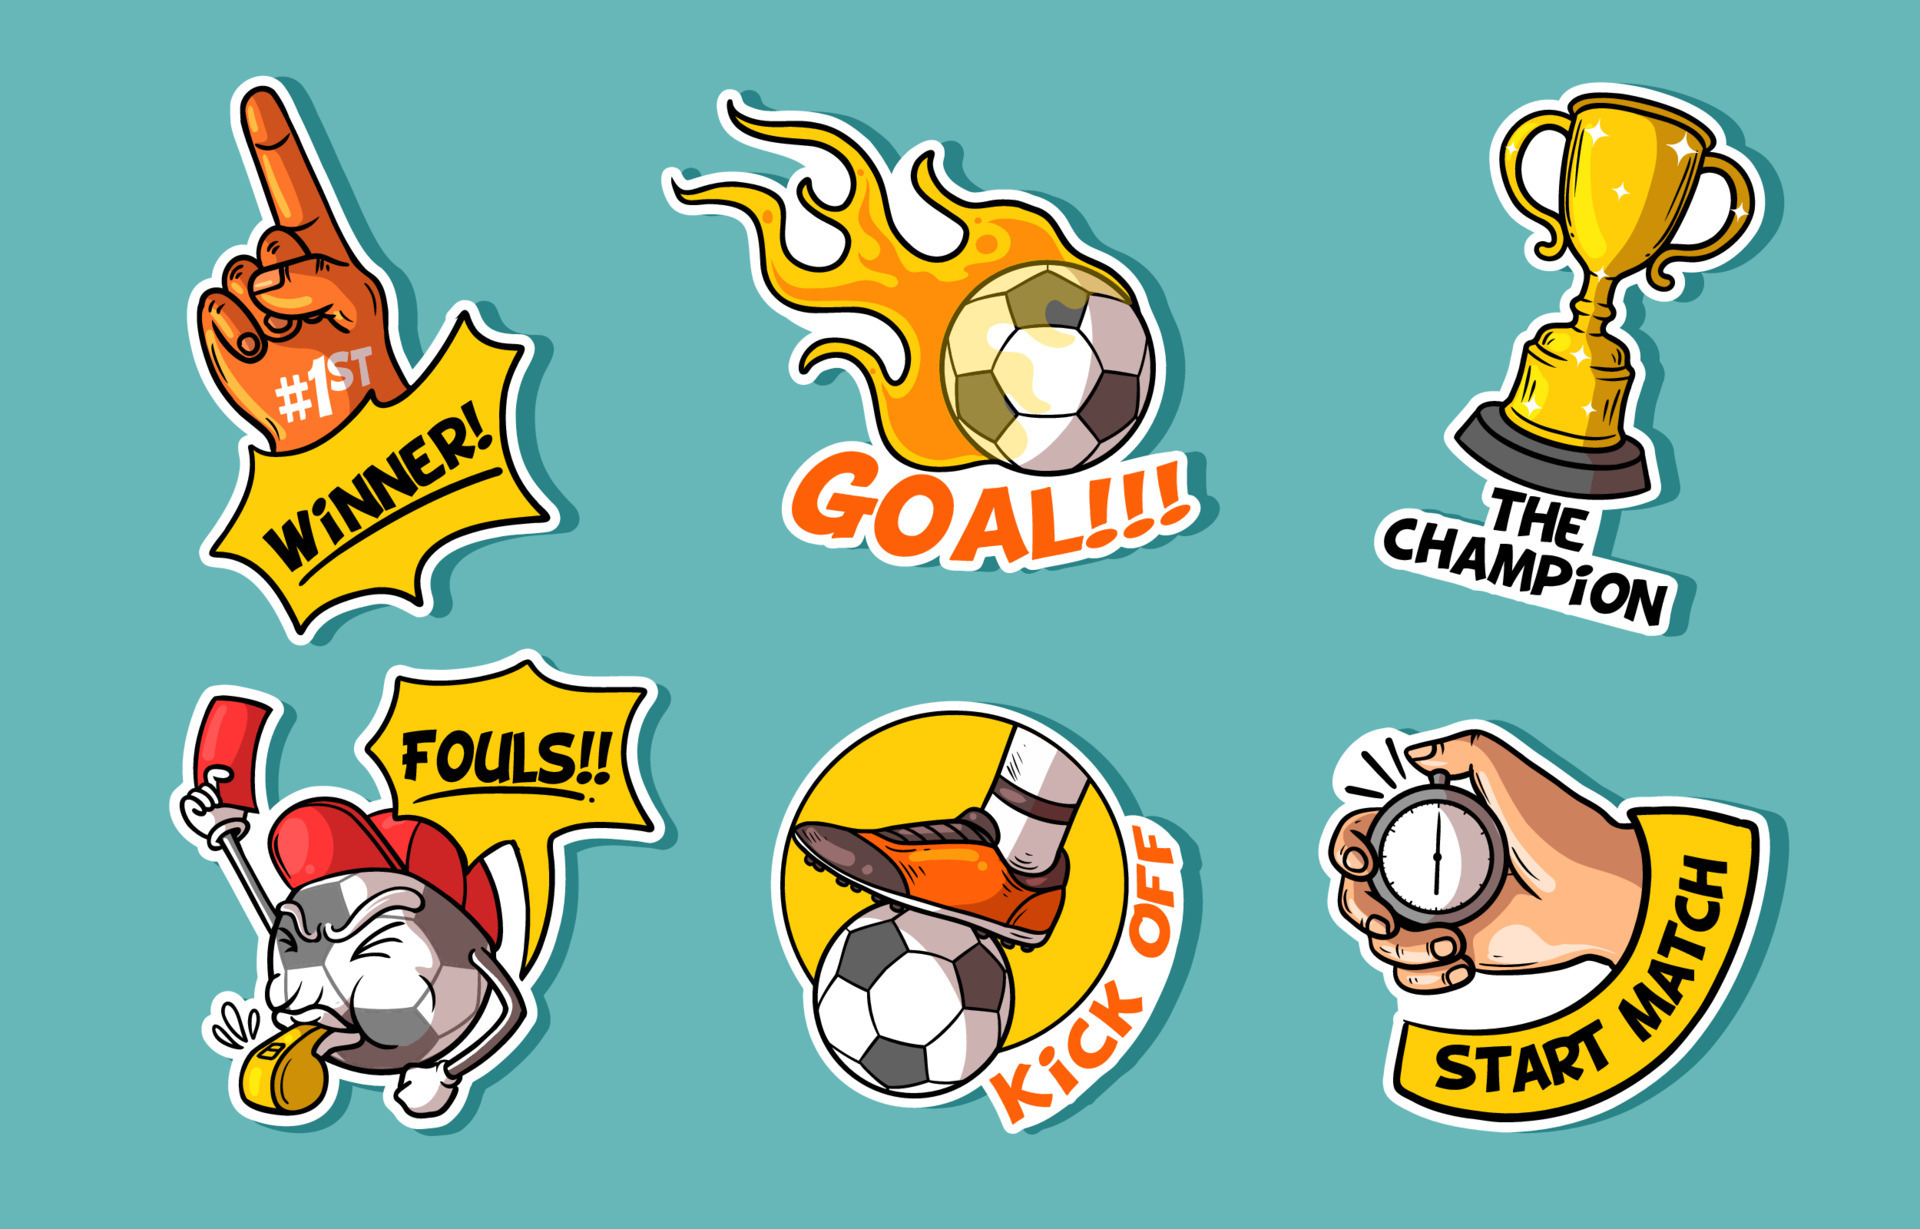 Colección de pegatinas de fútbol soccer con estilo de dibujos animados  dibujados a mano de colores